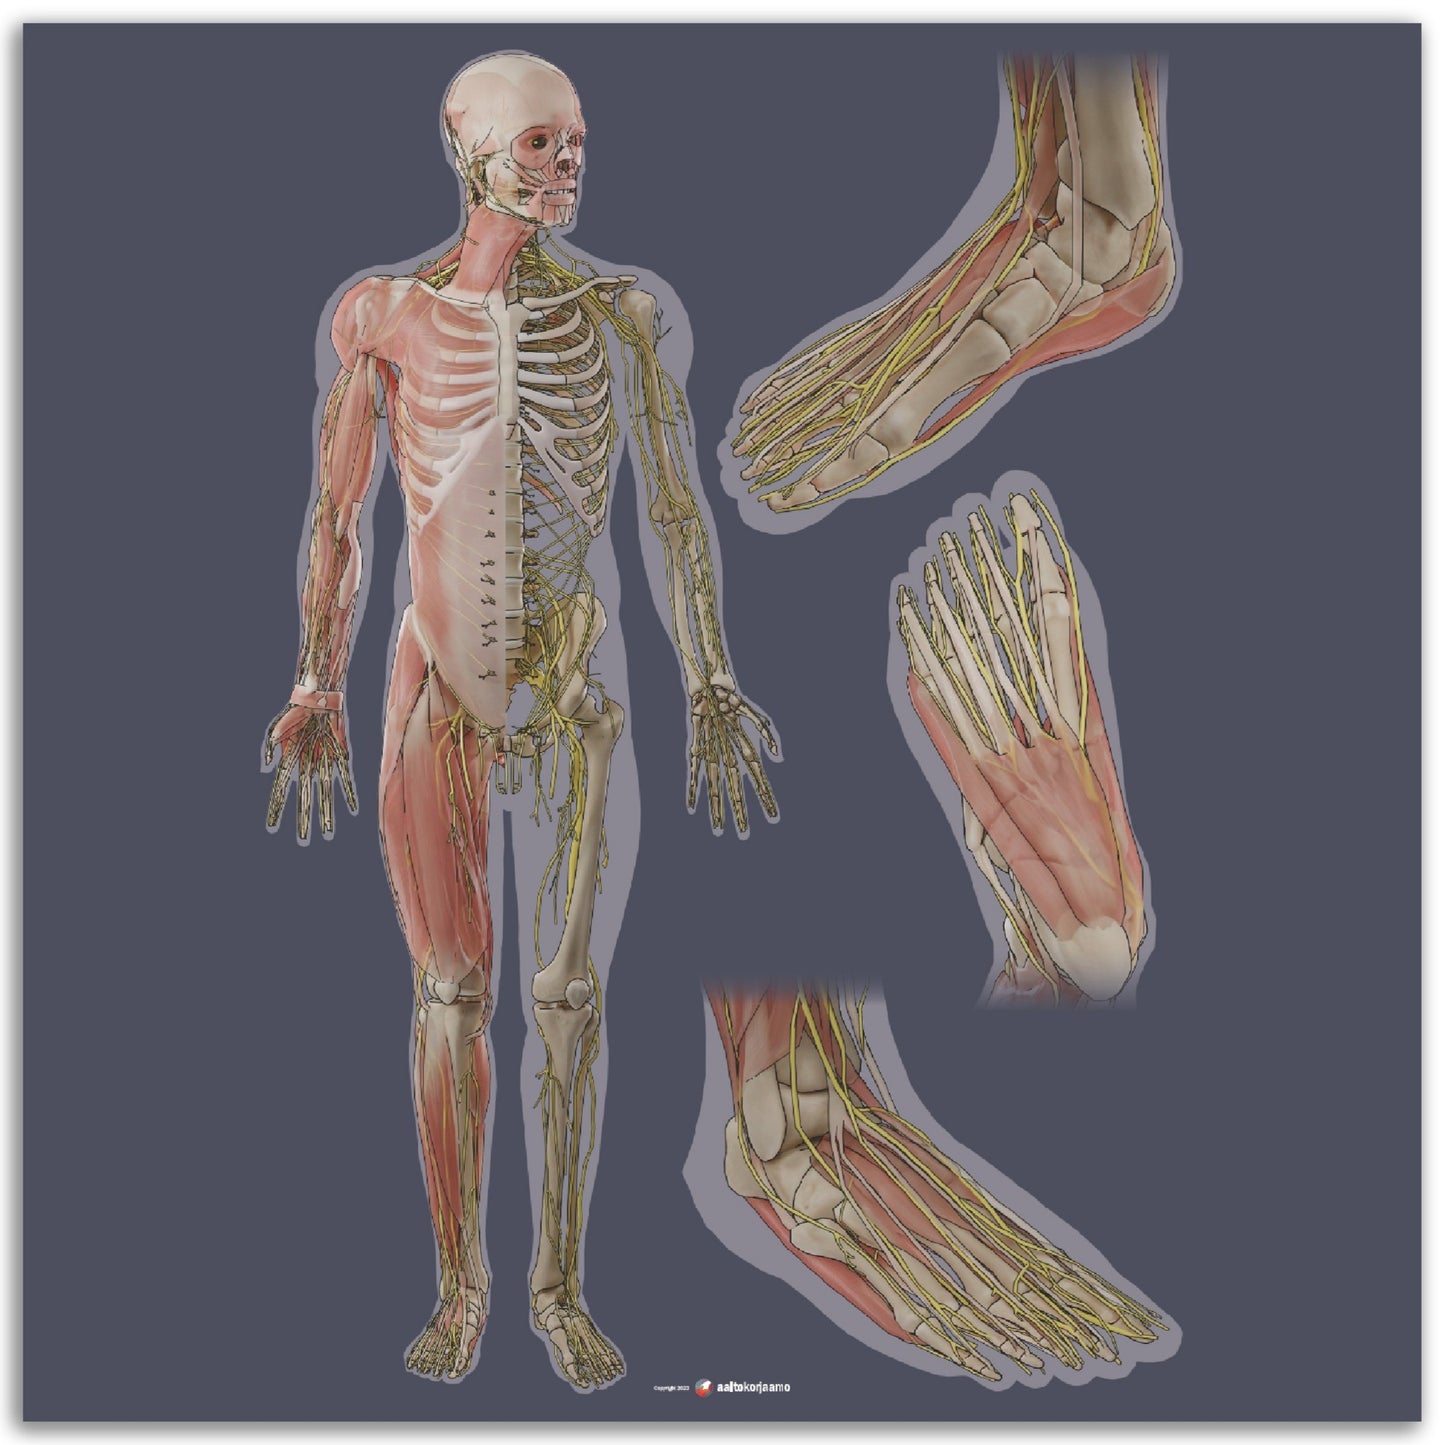 Keho ja jalkaterä x3 | Lihakset, luusto ja hermosto | Tumma harmaa | Juliste